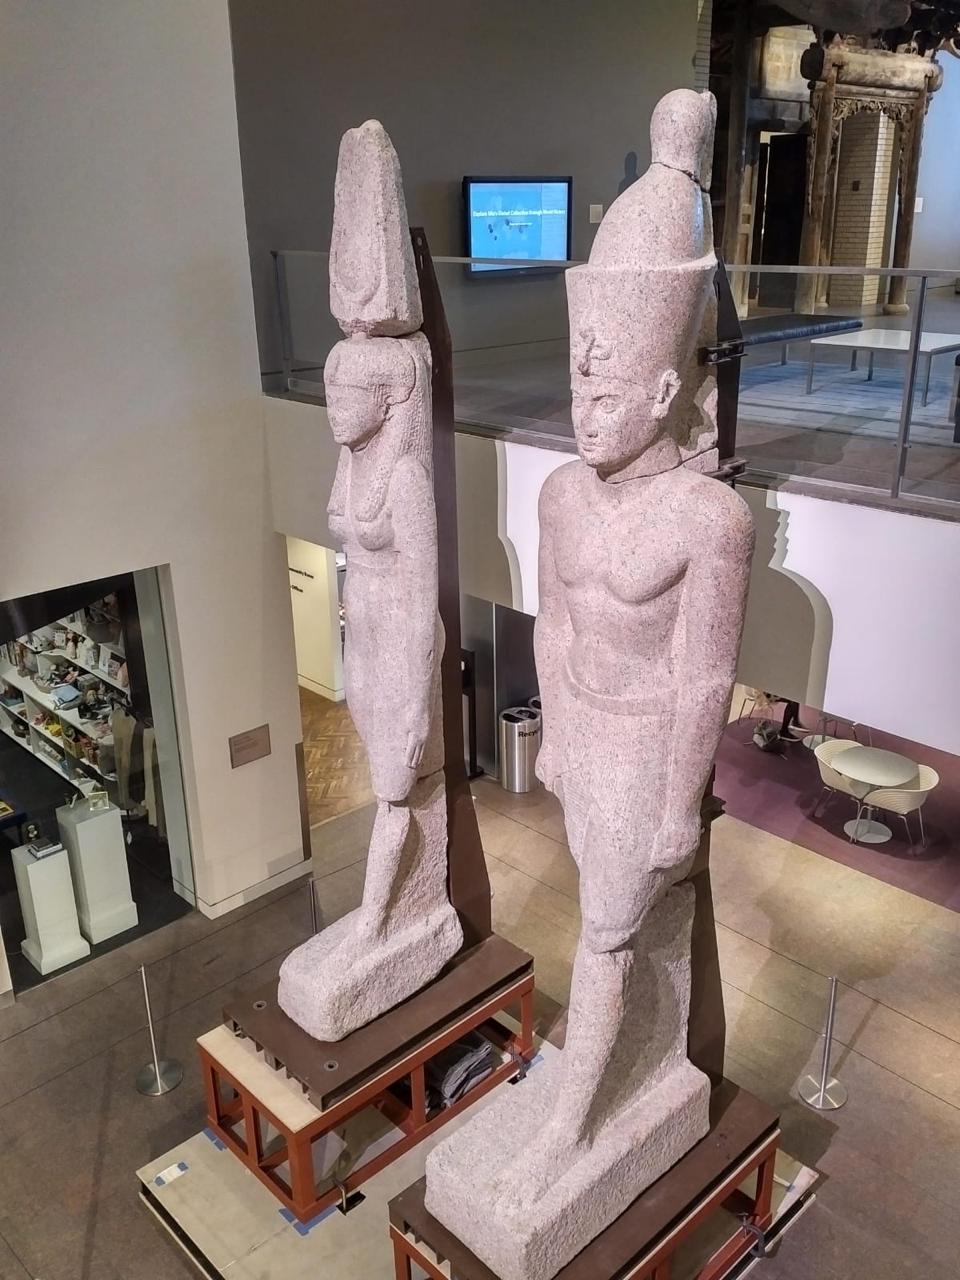 عودة تمثالين ملكيين إلى مصر لعرضهما بالمتحف المصري الكبير (1)